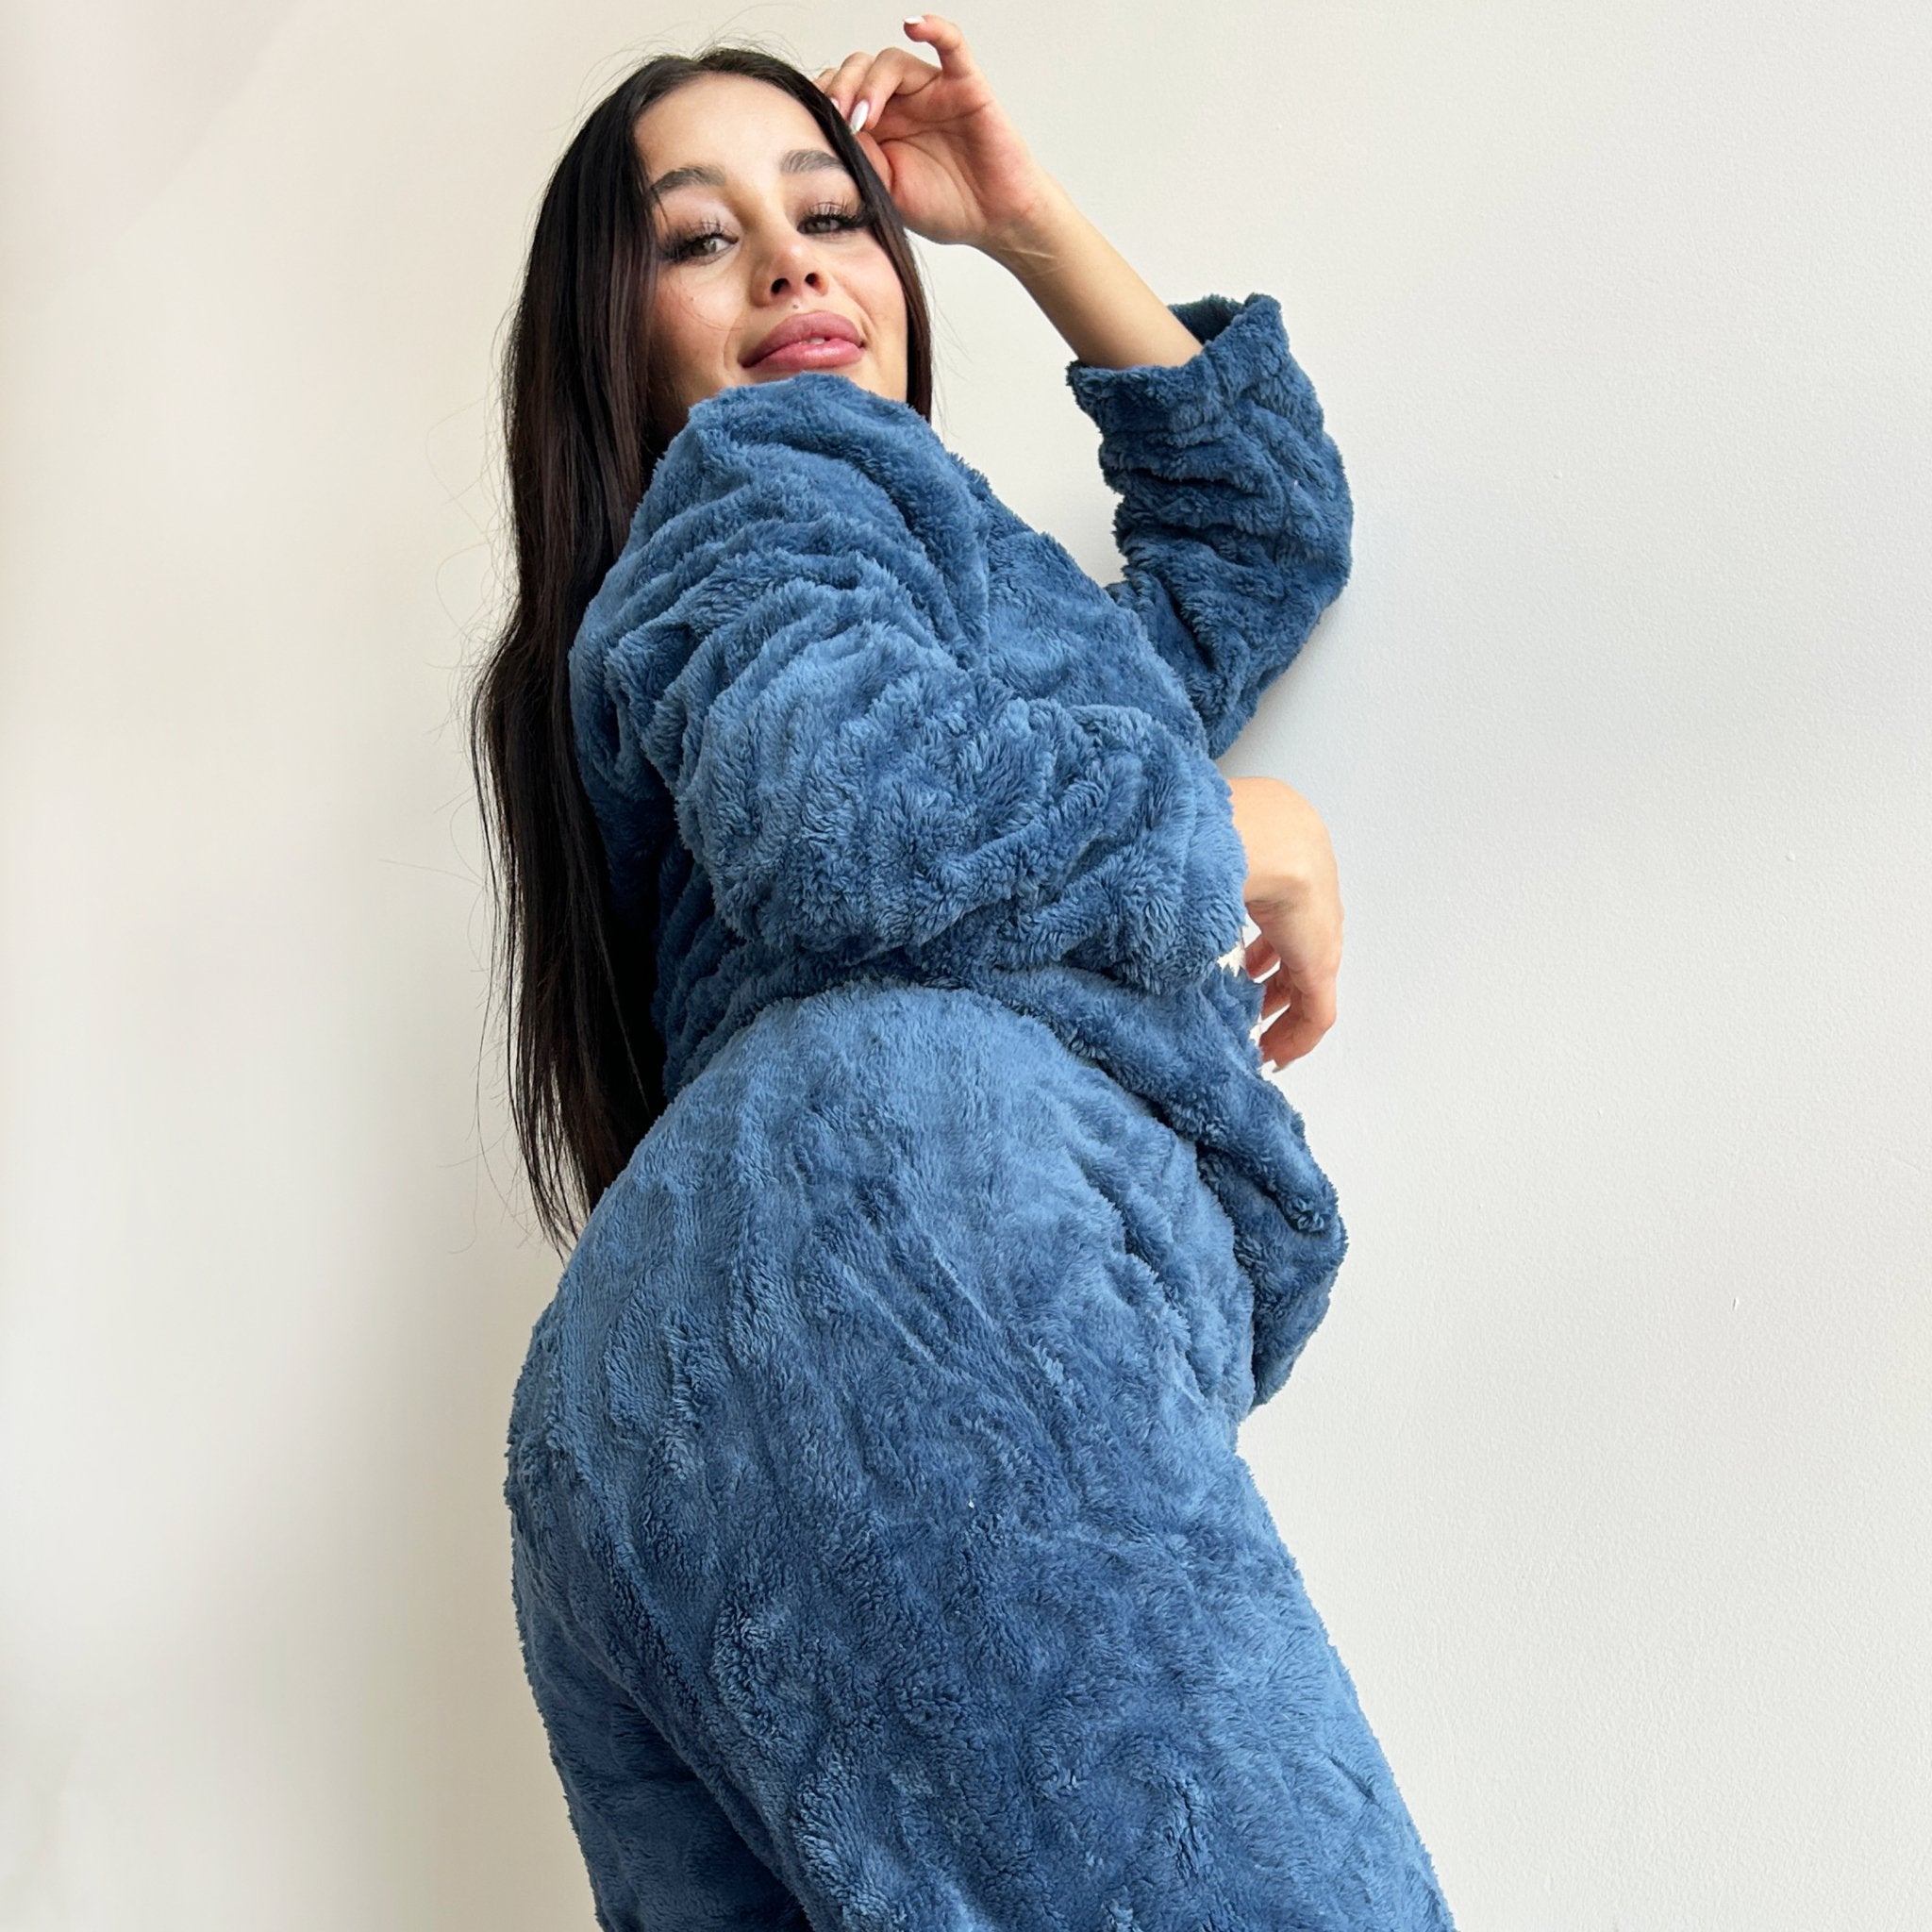 Pijama 2 Piezas Polar Patito - Sticky Bra #brasier_sin_espalda# #brasier_para_escotes# #brasier_para_vestido# #brasier_strapless# #brasier_adhesivo# #brasier_adherente# #brasier_de_silicon# #brasier_escot